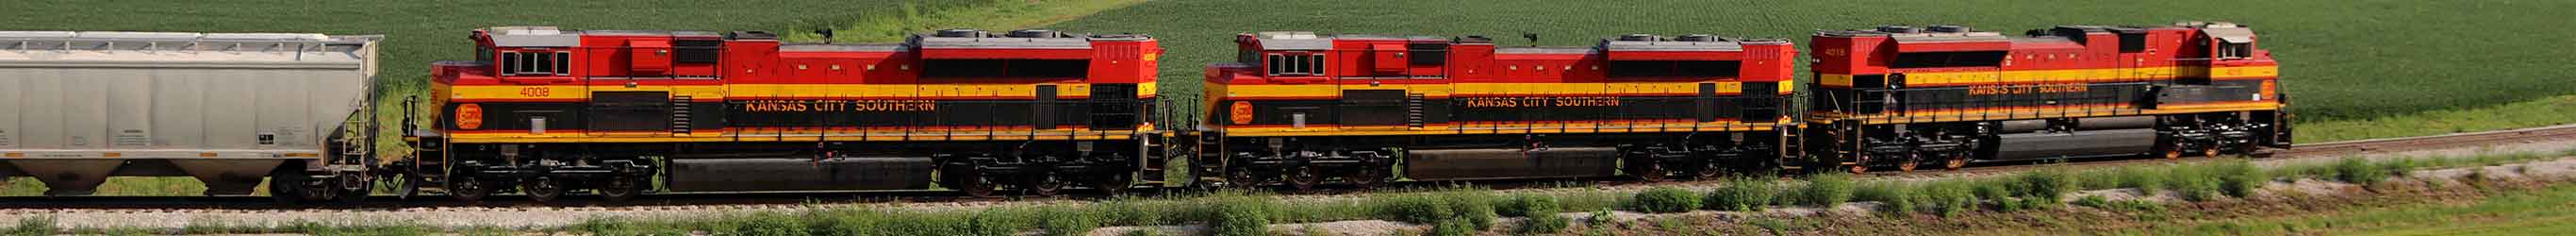 kcs locomotives